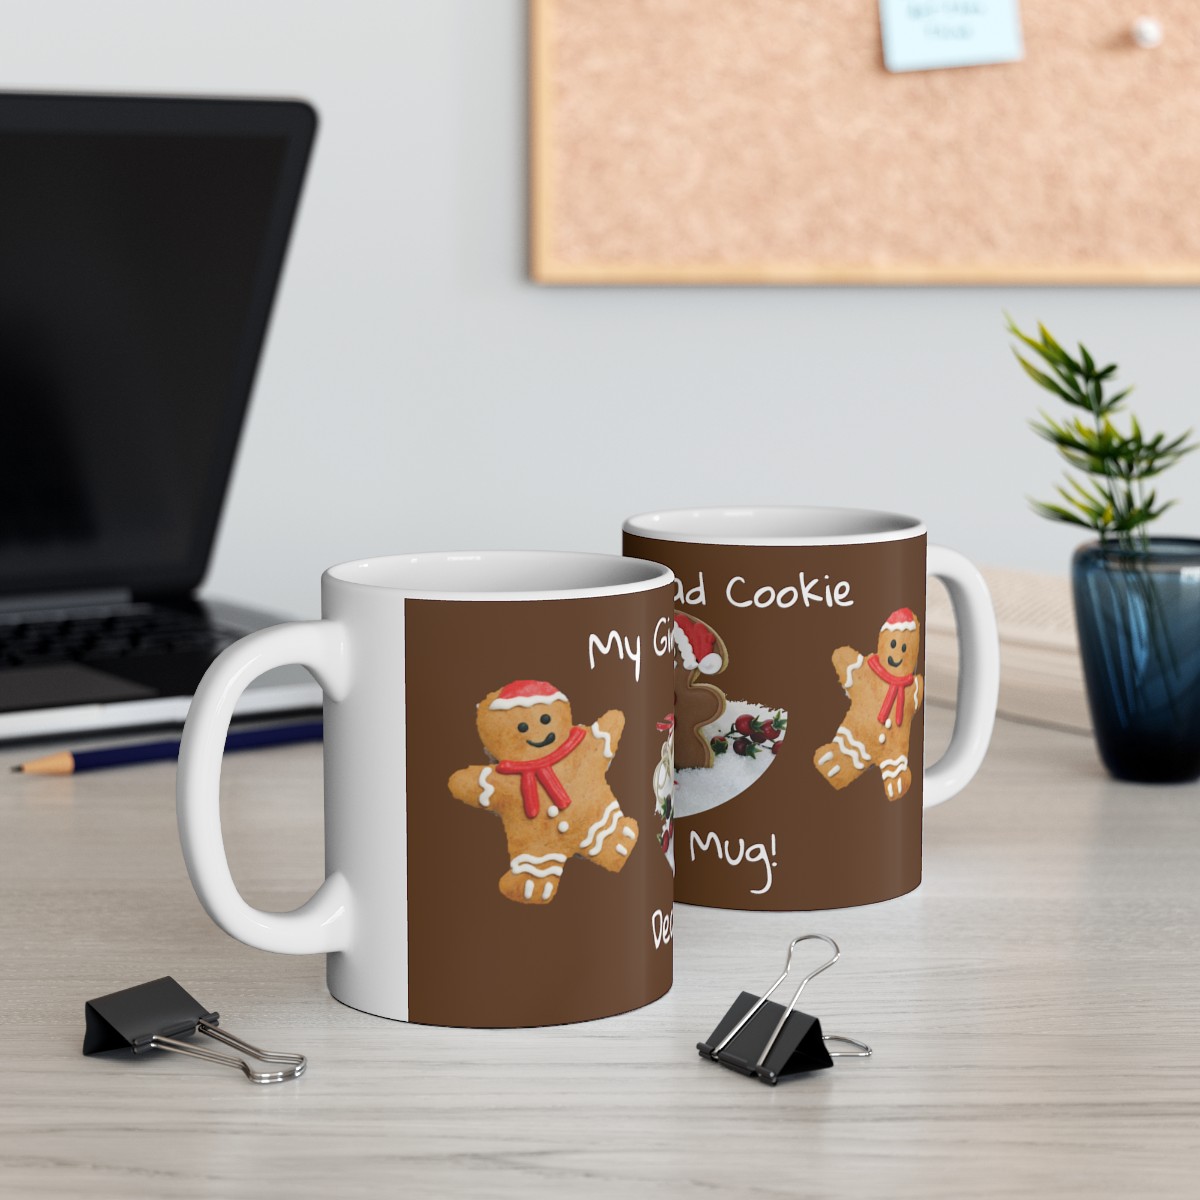 Whimsical Wonderland: My Gingerbread Cookie Decorating Mug! - Ceramic Mug 11oz product thumbnail image